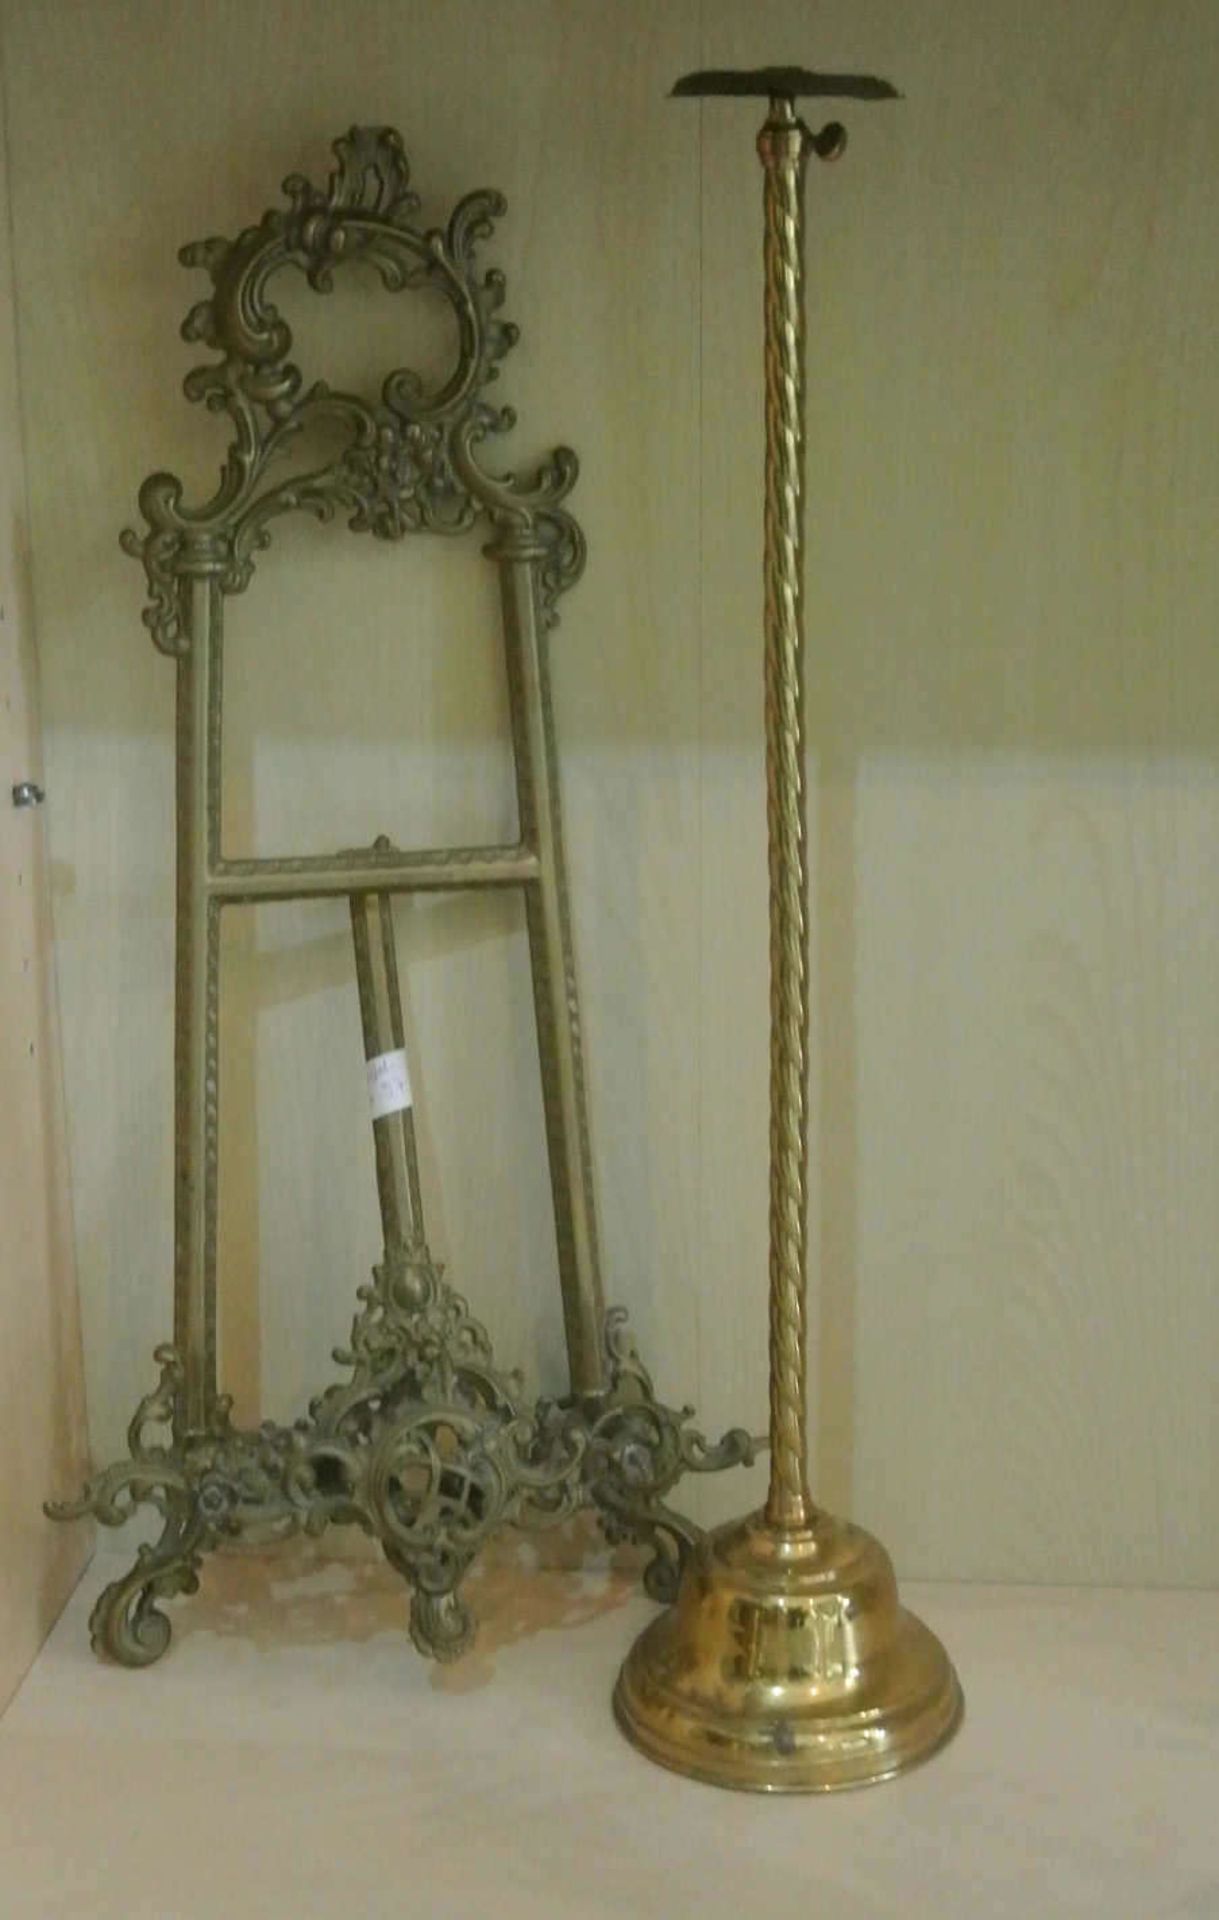 Messingstaffelei mit aufwendiger Verzierung, Höhe ca. 50 cm, guter Zustand, sowie 1 Lampenständer